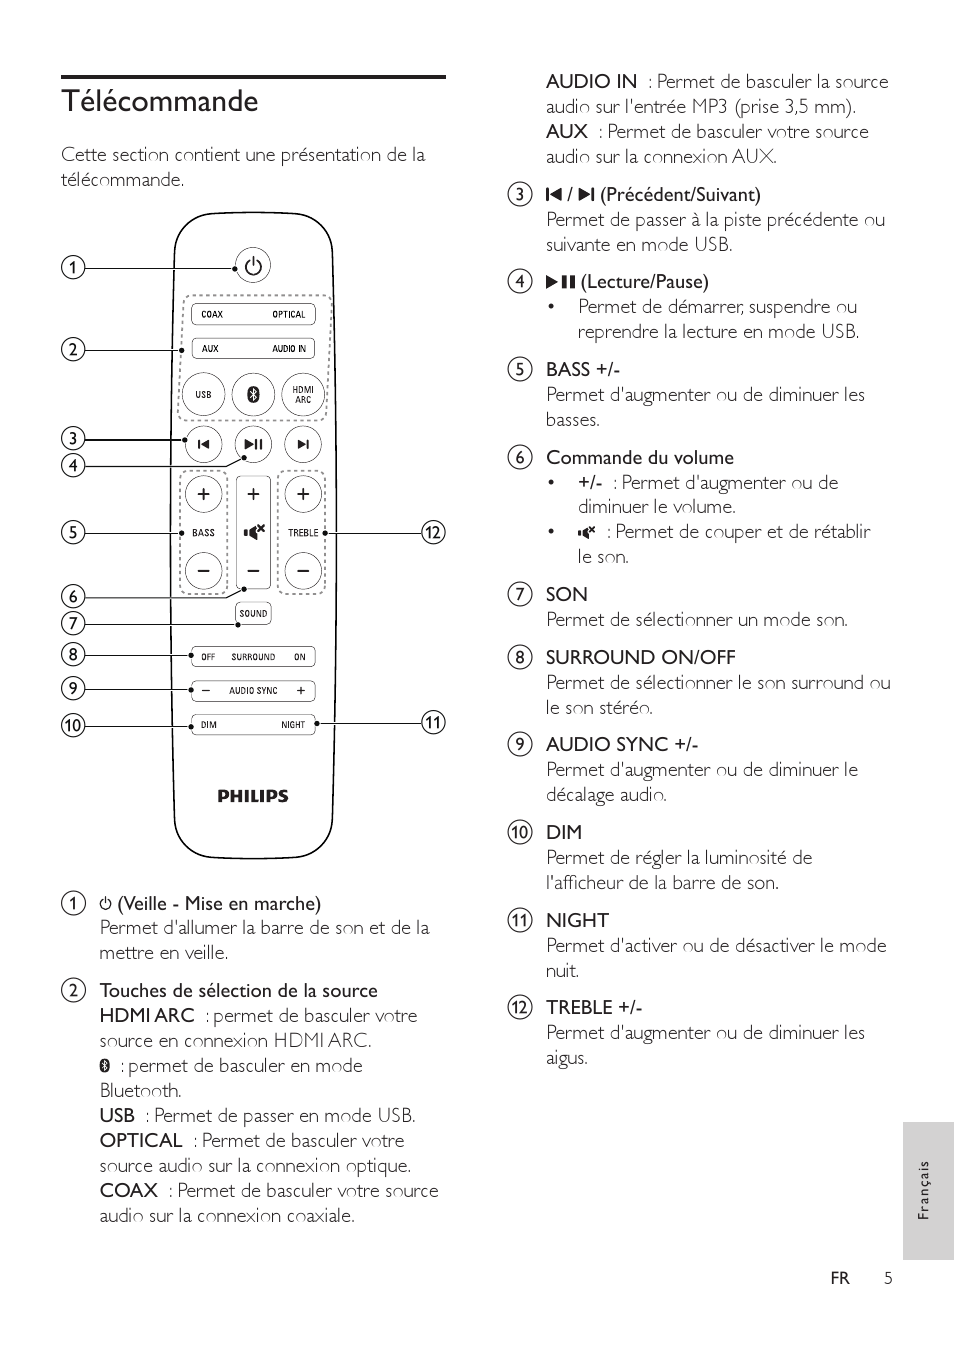 Télécommande, Télécommande 5 | Philips Barre de son Manuel d'utilisation | Page 7 / 20